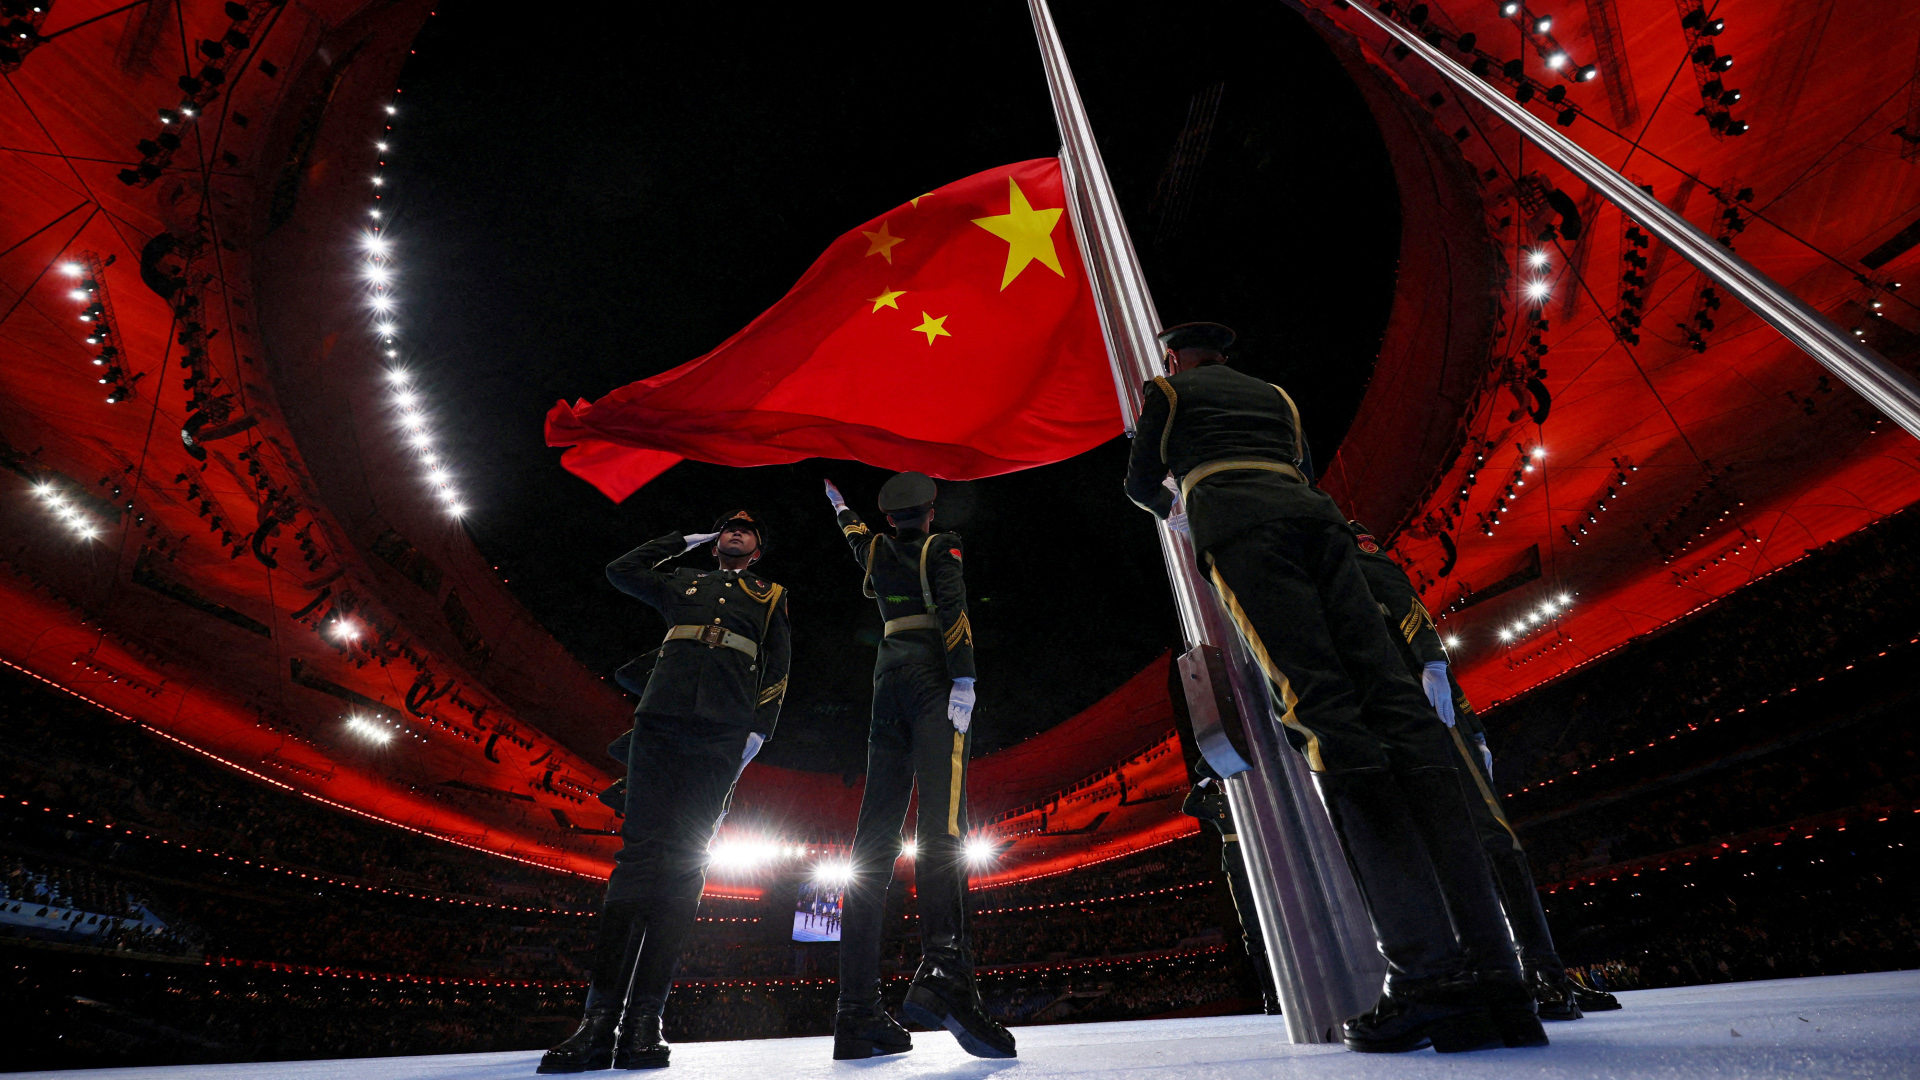 Soldaten hissen die chinesische Flagge bei einer Zeremonie während der Olympischen Winterspiele